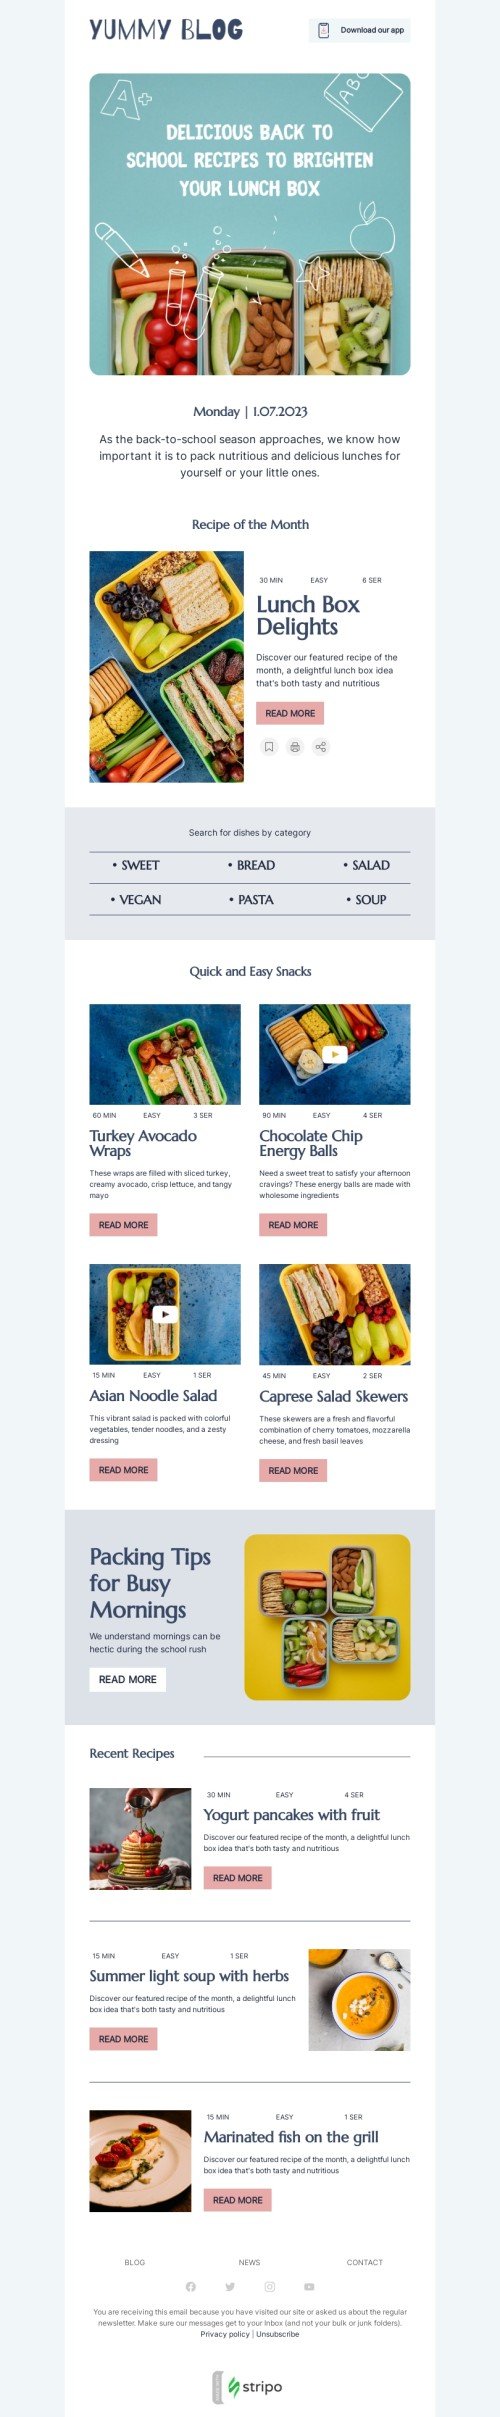 Modello email ricomincia la scuola «Illumina la tua scatola del pranzo» per il settore industriale di editoria e blog Visualizzazione mobile